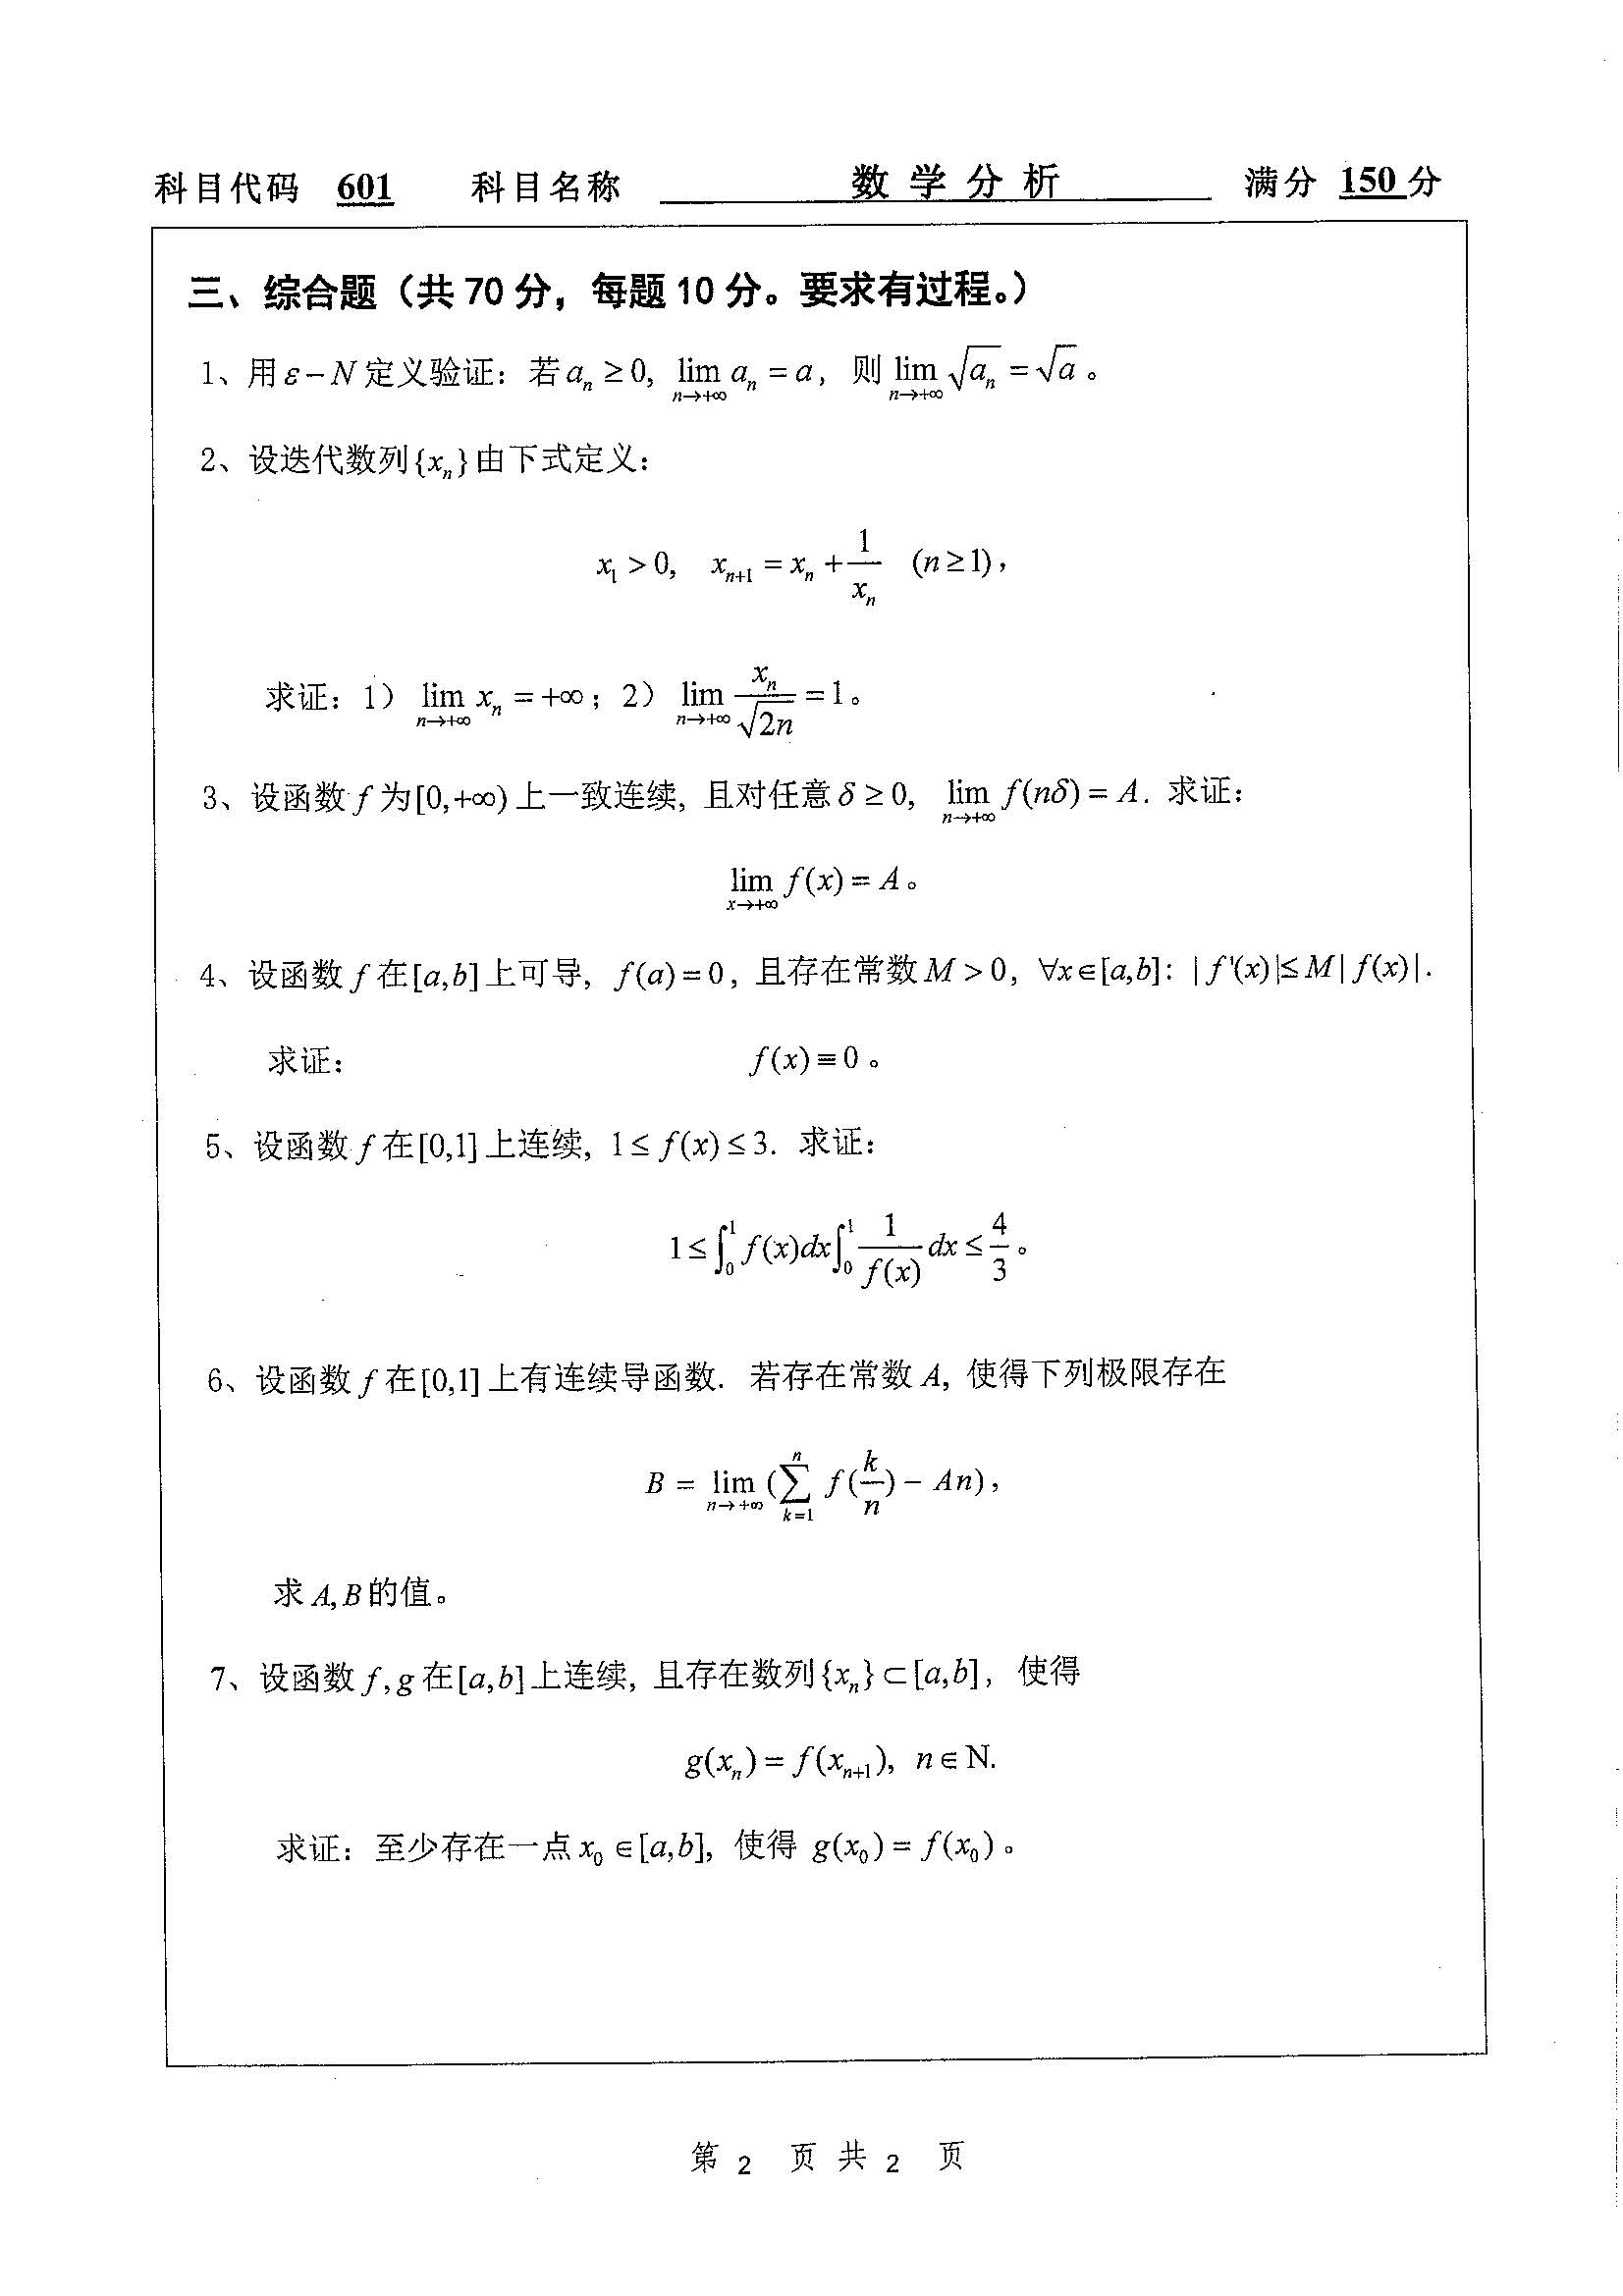 601-数学分析2019年考研初试试卷真题(扬州大学)